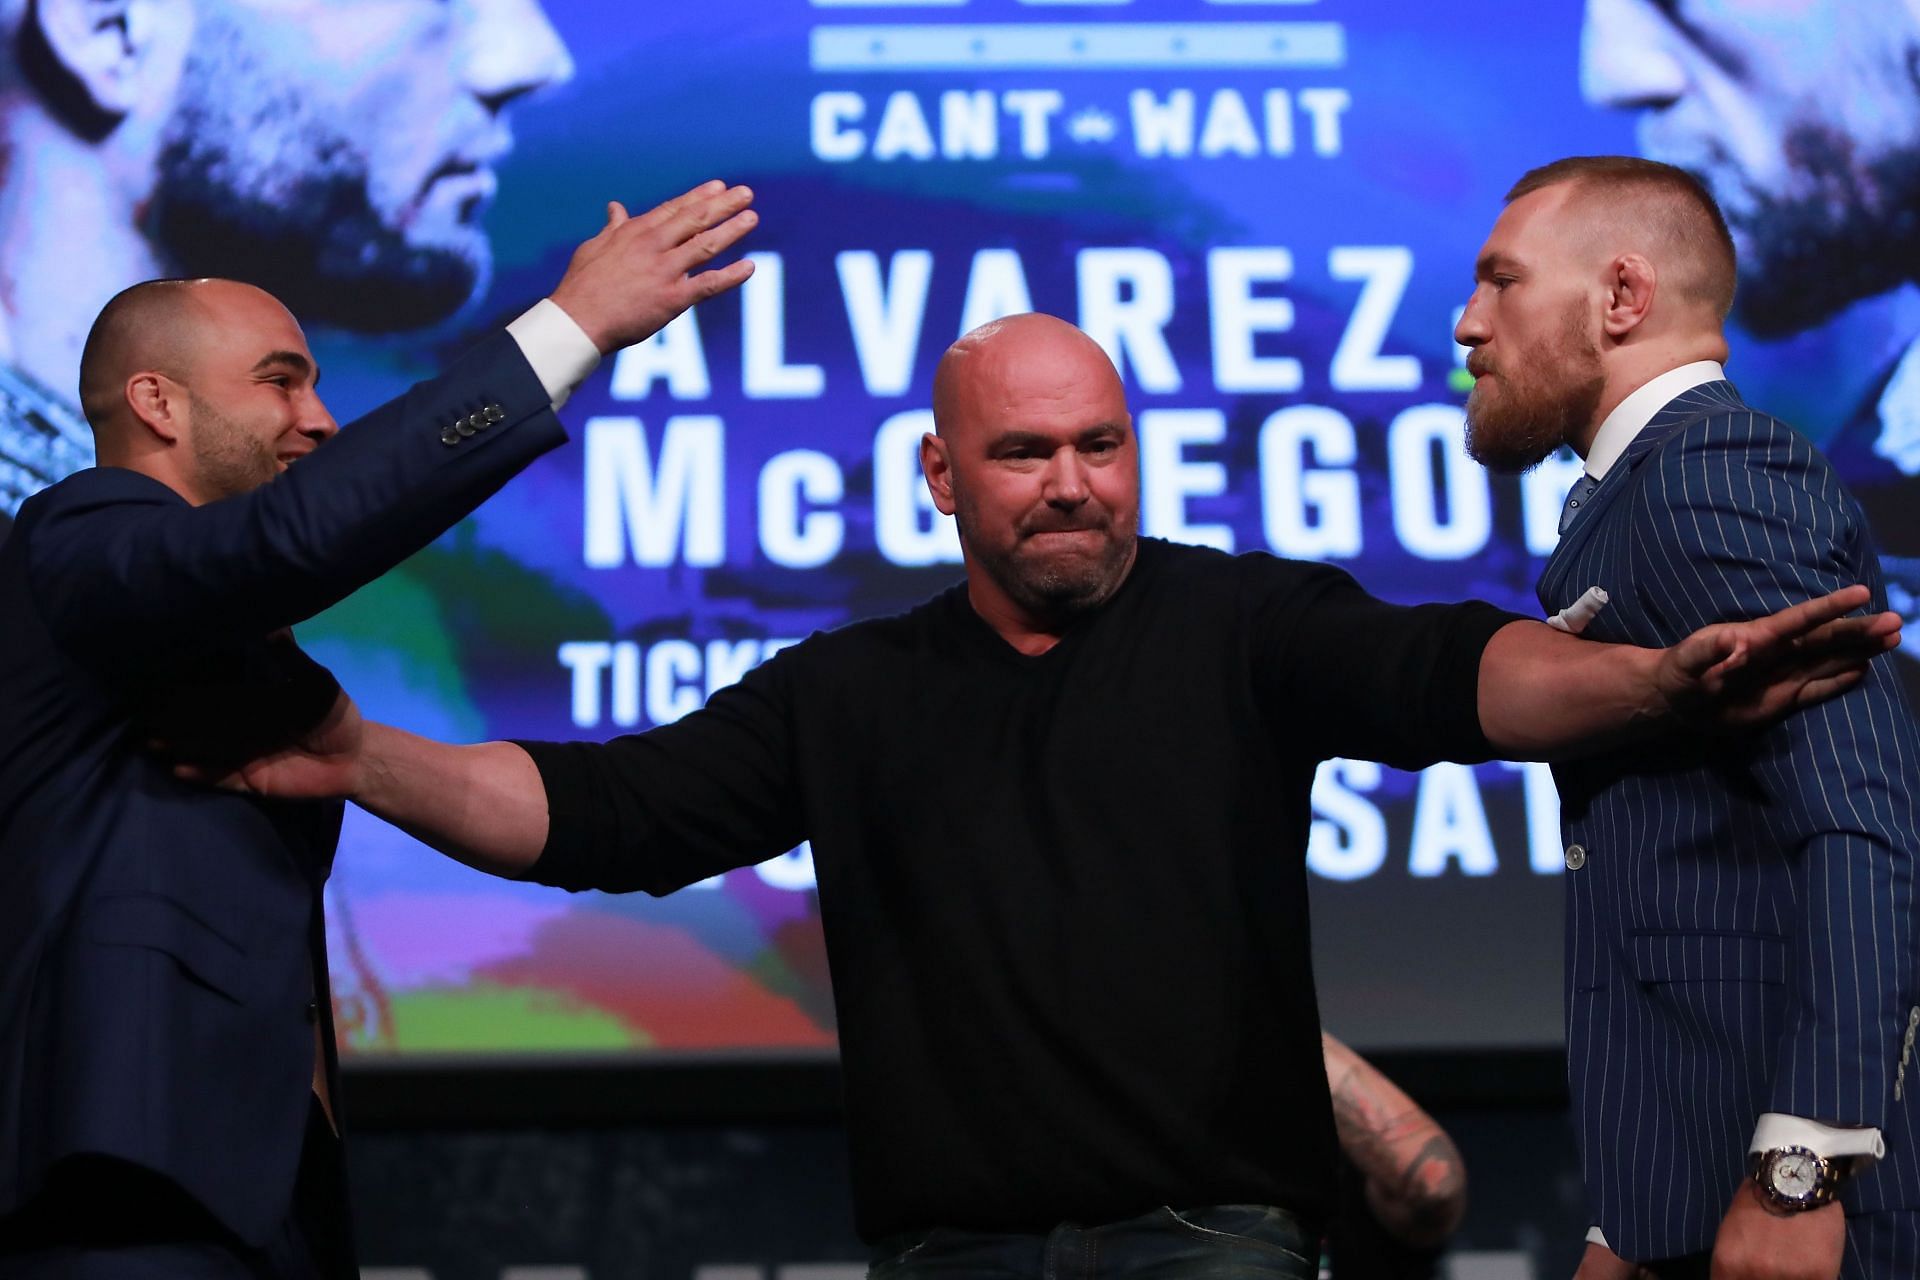 UFC 205 Press Conference between McGregor and Alvarez